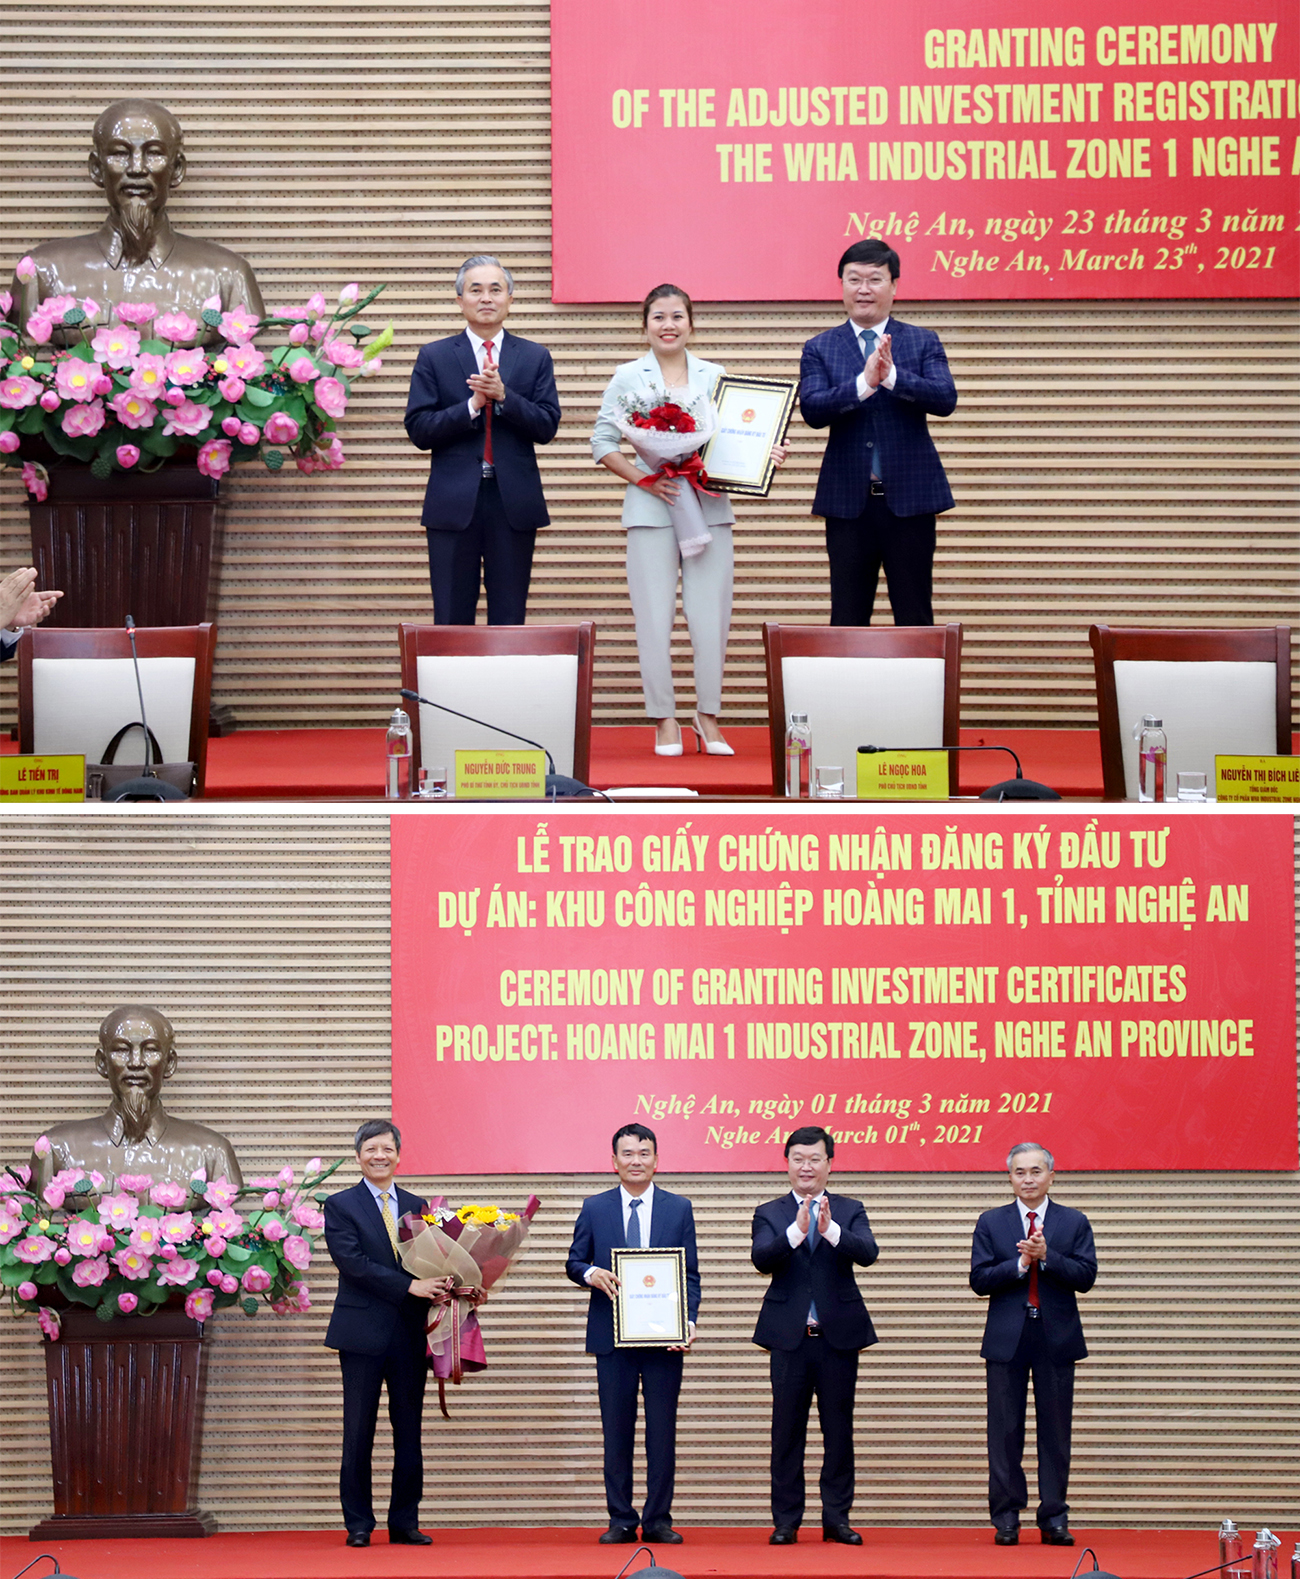 Chủ tịch UBND tỉnh Nguyễn Đức Trung trao Quyết định đăng ký đầu tư điều chỉnh đầu tư cho nhà đầu tư KCN WHA (ảnh trên) và Giấy chứng nhận đăng ký đầu tư cho Công ty CP Hoàng Thịnh Đạt.